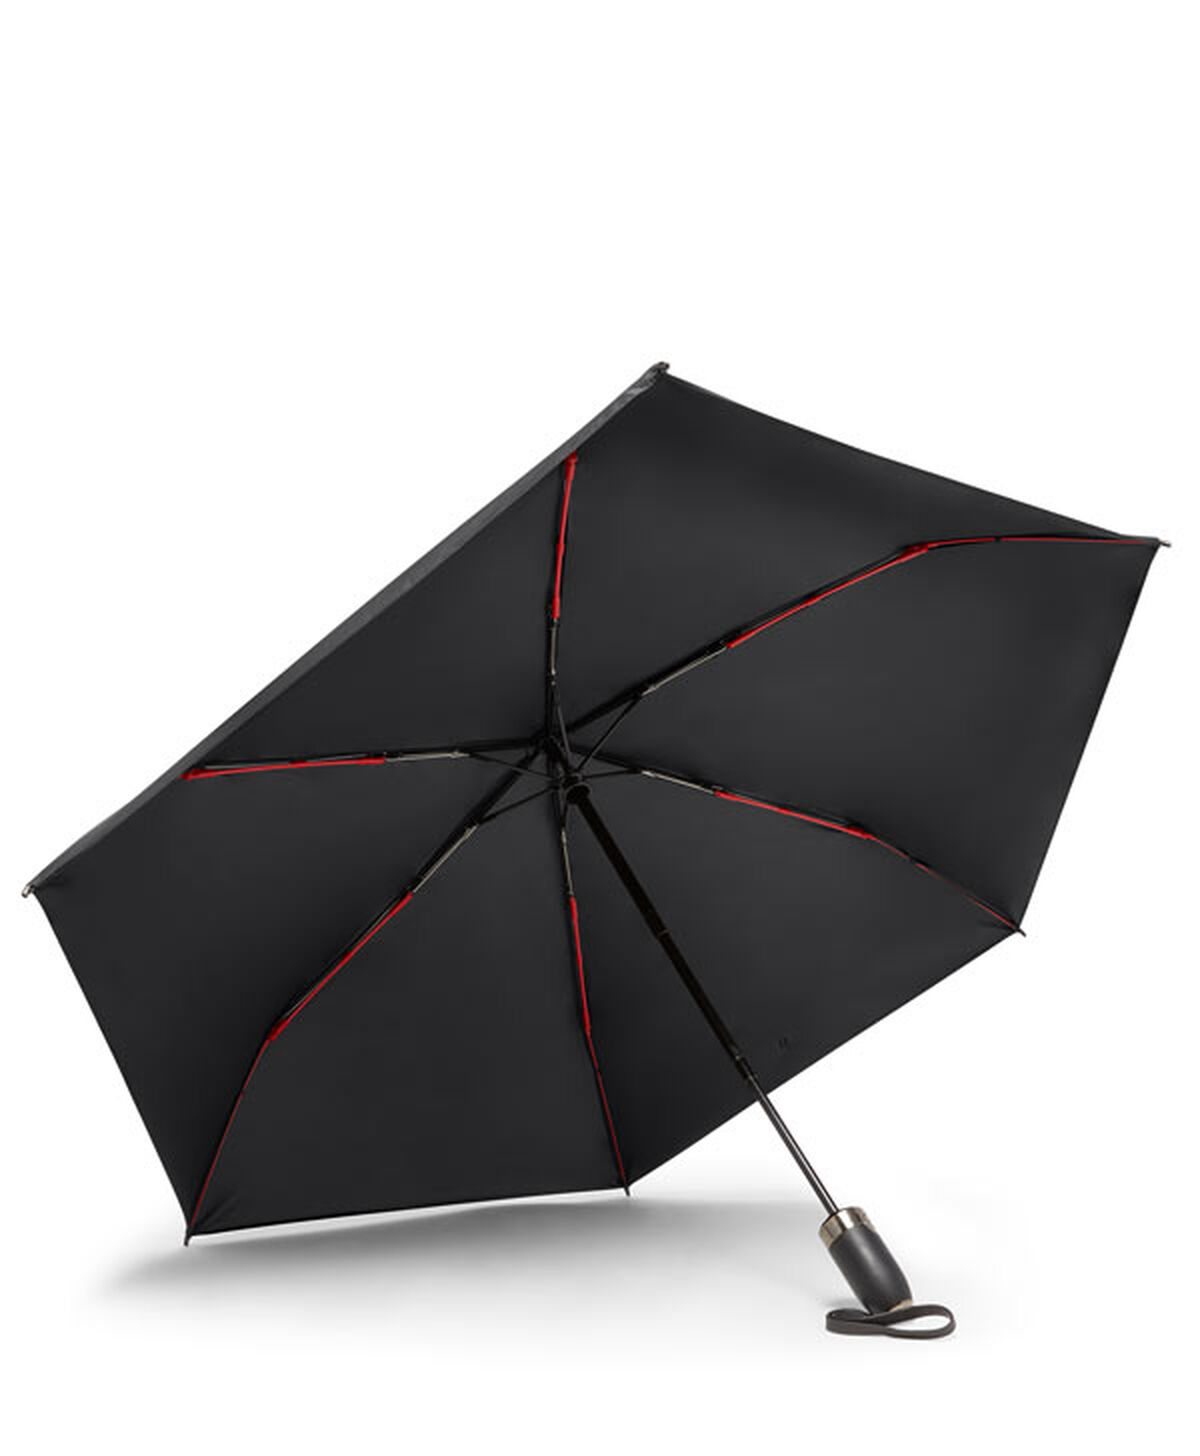 Tumi Umbrellas Medium Auto Close Umbrella  Black